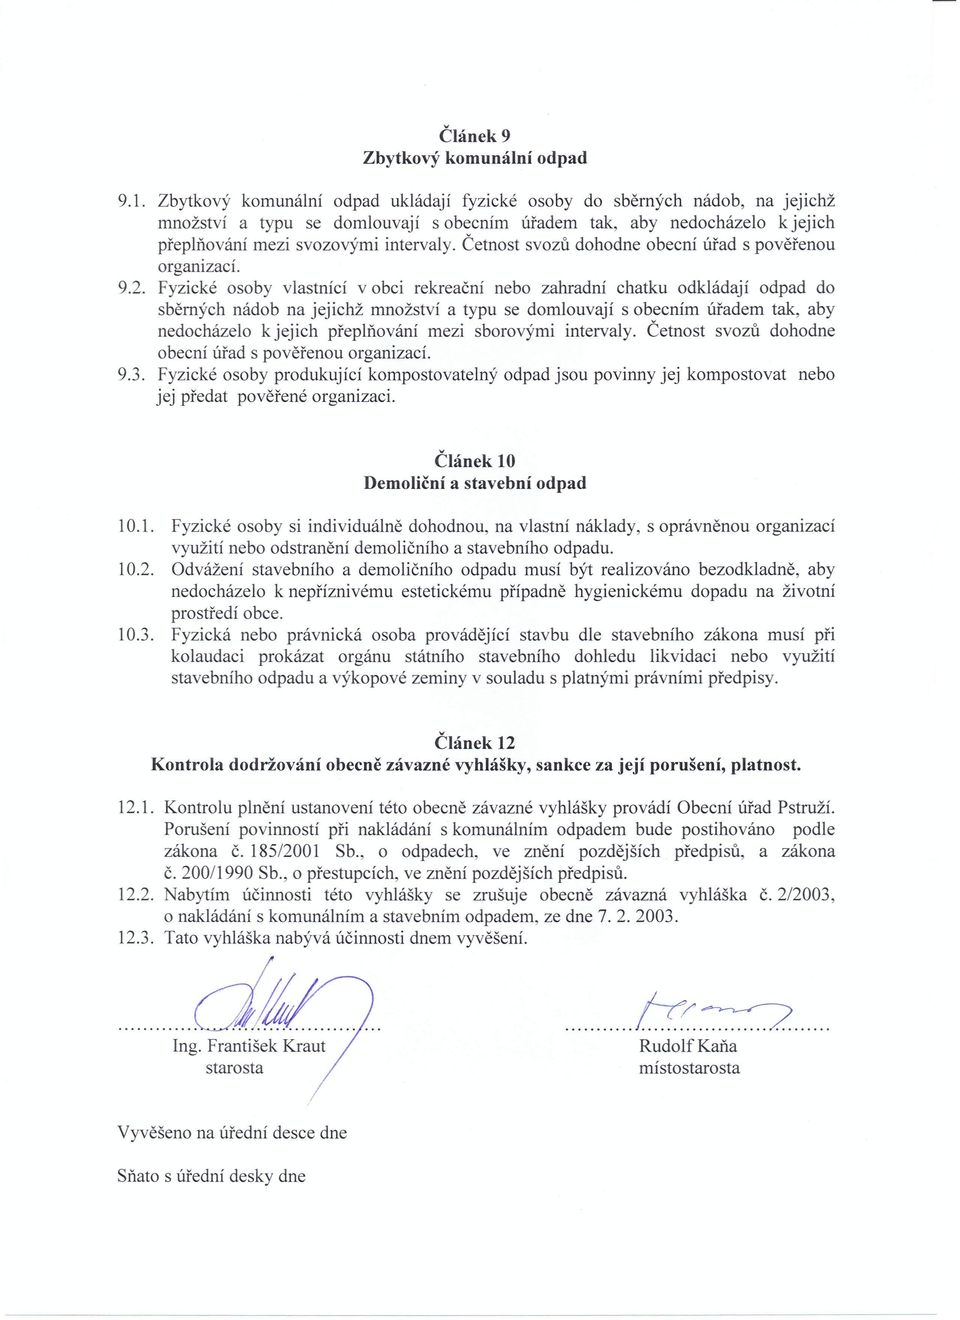 Četnost svozů dohodne obecní úřad s pověřenou organizací. 9.2.